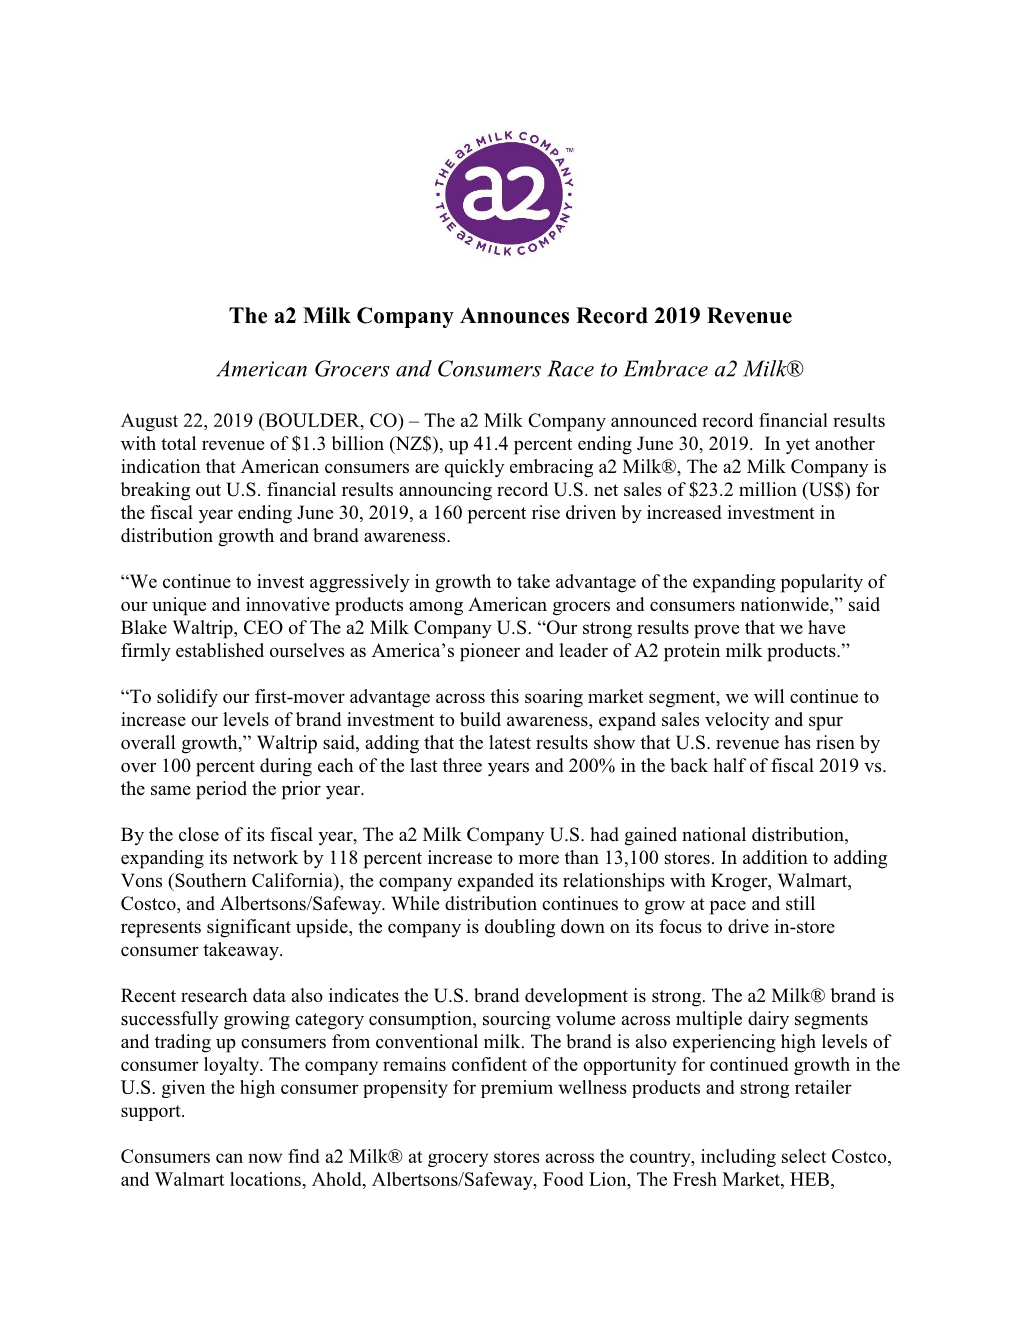 The A2 Milk Company Announces Record 2019 Revenue